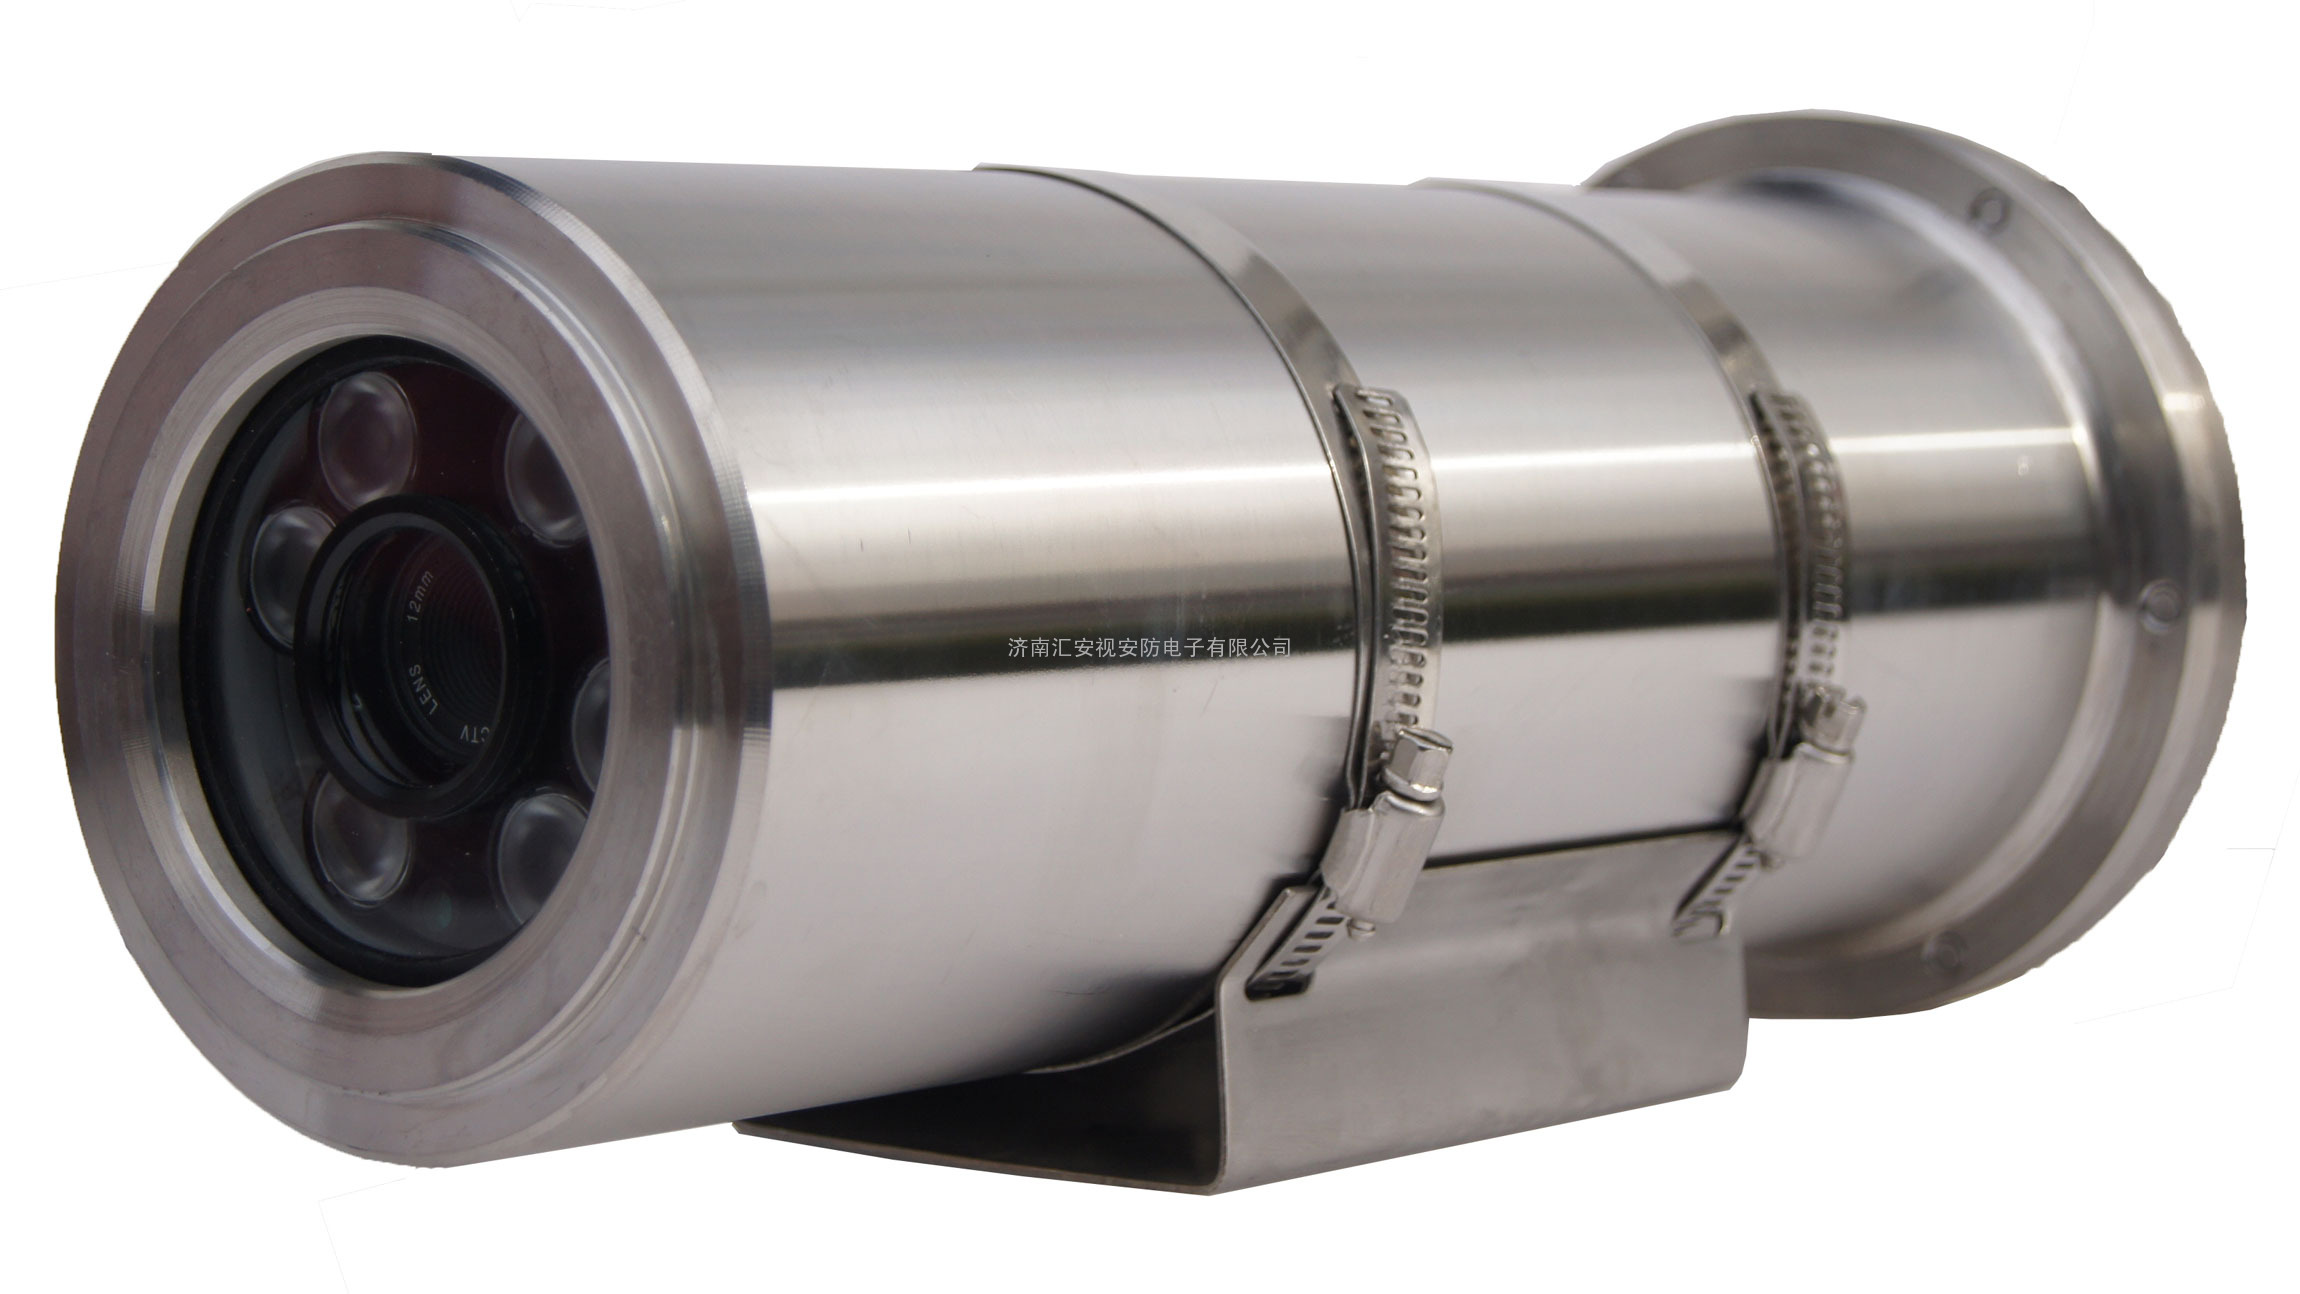 高清红外防爆摄像机生产厂家-200万像素